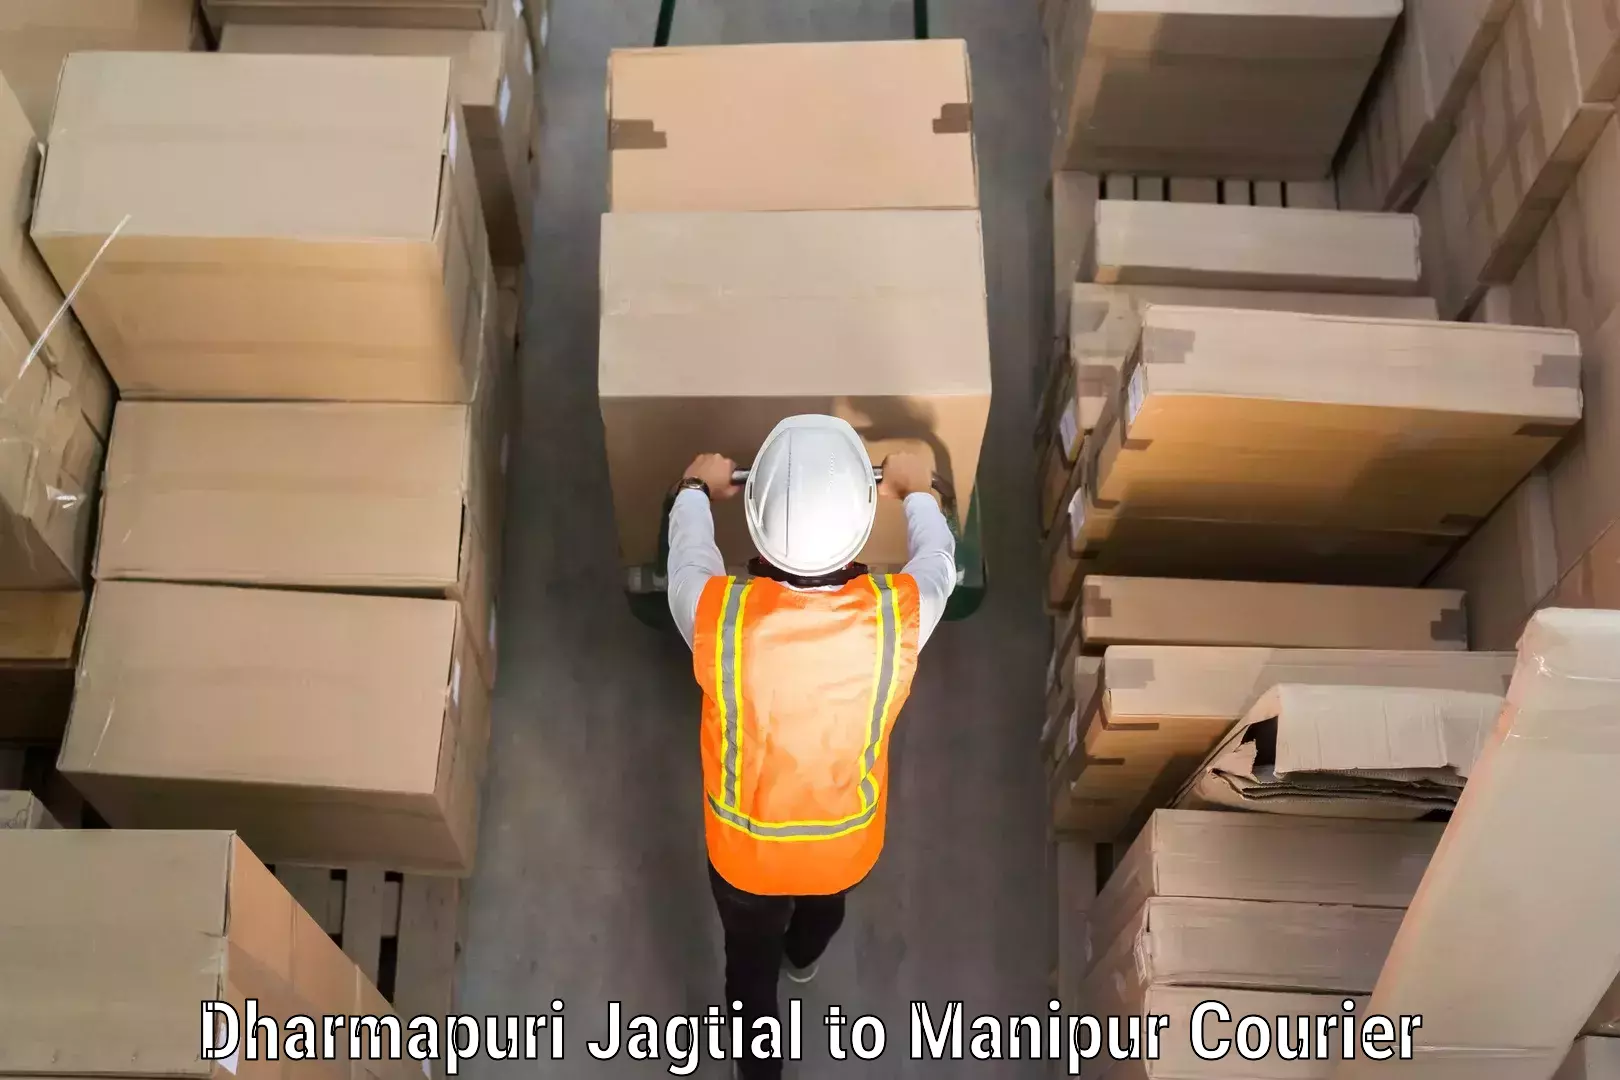 Citywide baggage courier Dharmapuri Jagtial to Kanti